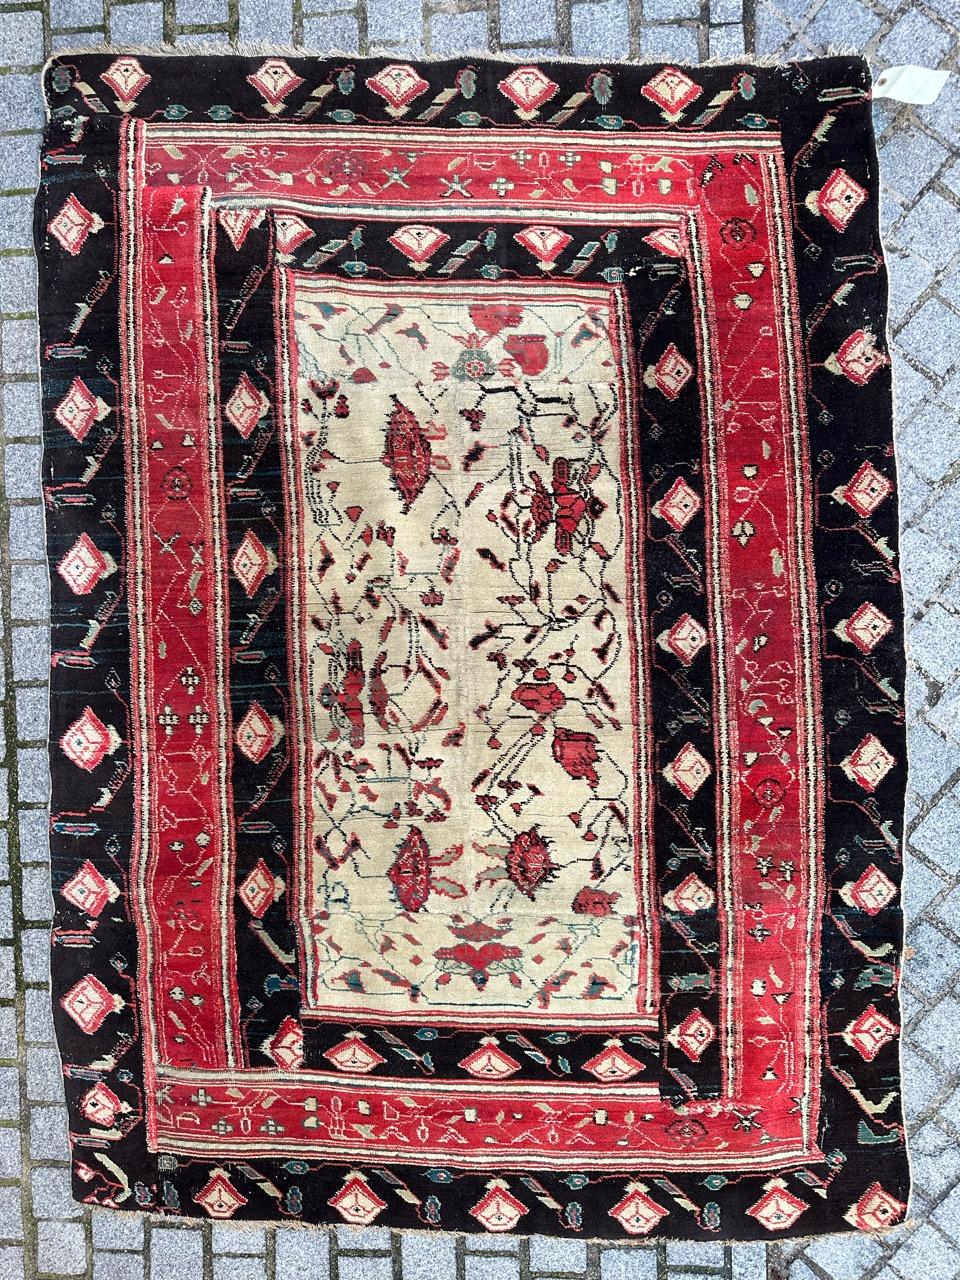 Exquisiter antiker indischer Agra-Teppich aus der Mitte des 19. Jahrhunderts. Dieses Meisterwerk ist vollständig aus Wolle auf Baumwollbasis handgeknüpft und zeigt ein dekoratives Muster auf weißem Grund, das mit stilisierten roten Blumenmustern